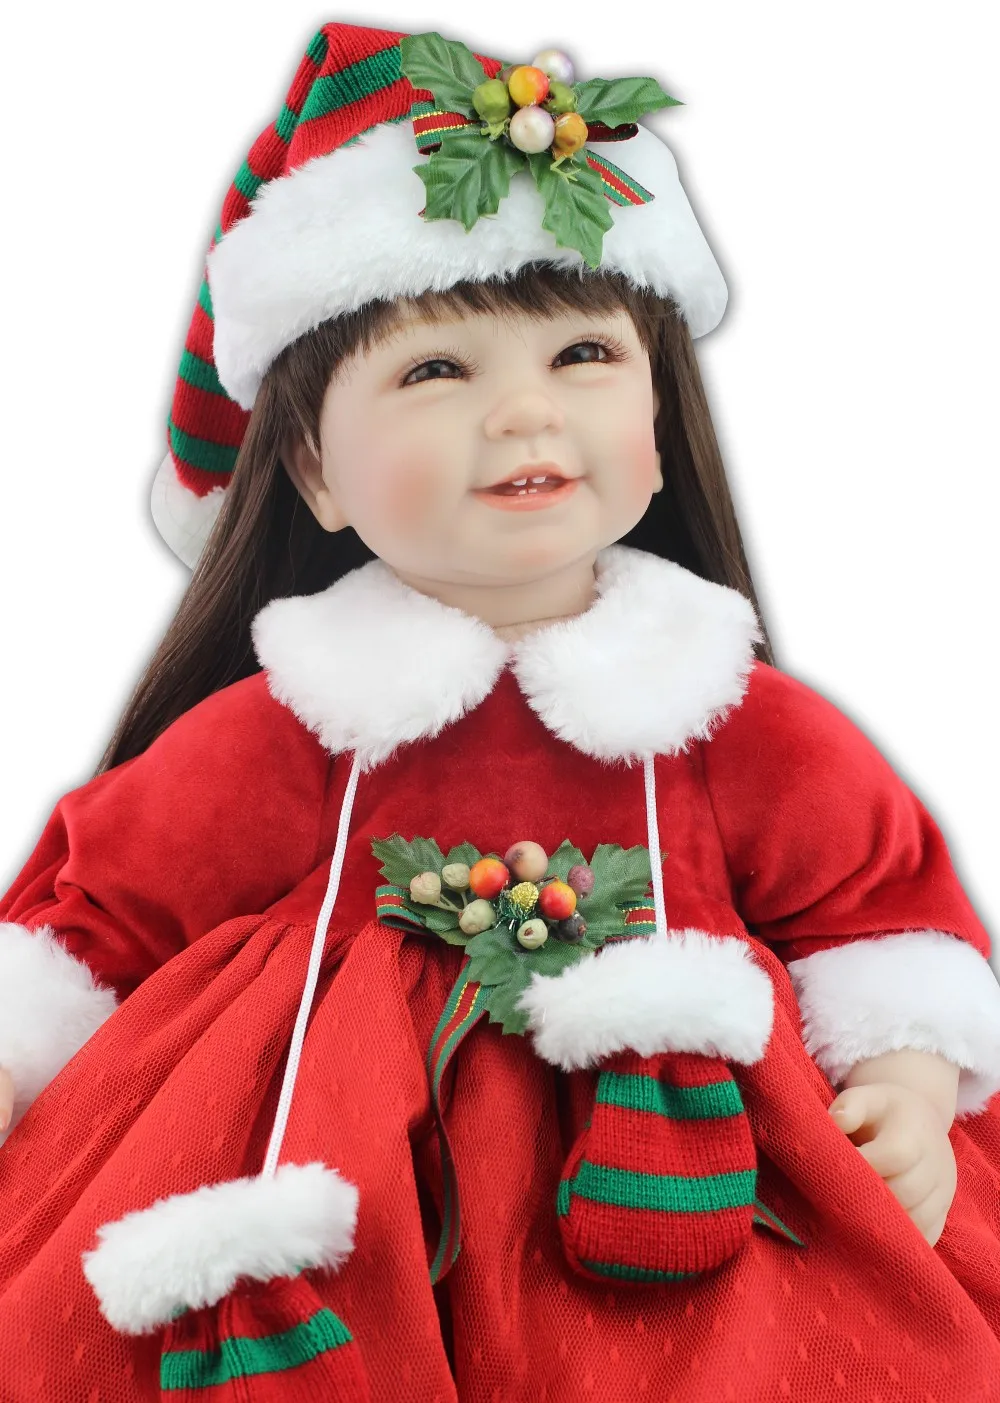 NPK Реалистичная кукла-реборн младенец игрушка с рождественской шляпой и красной юбкой Мода Кукла подарок для девочки дизайн горячая распродажа